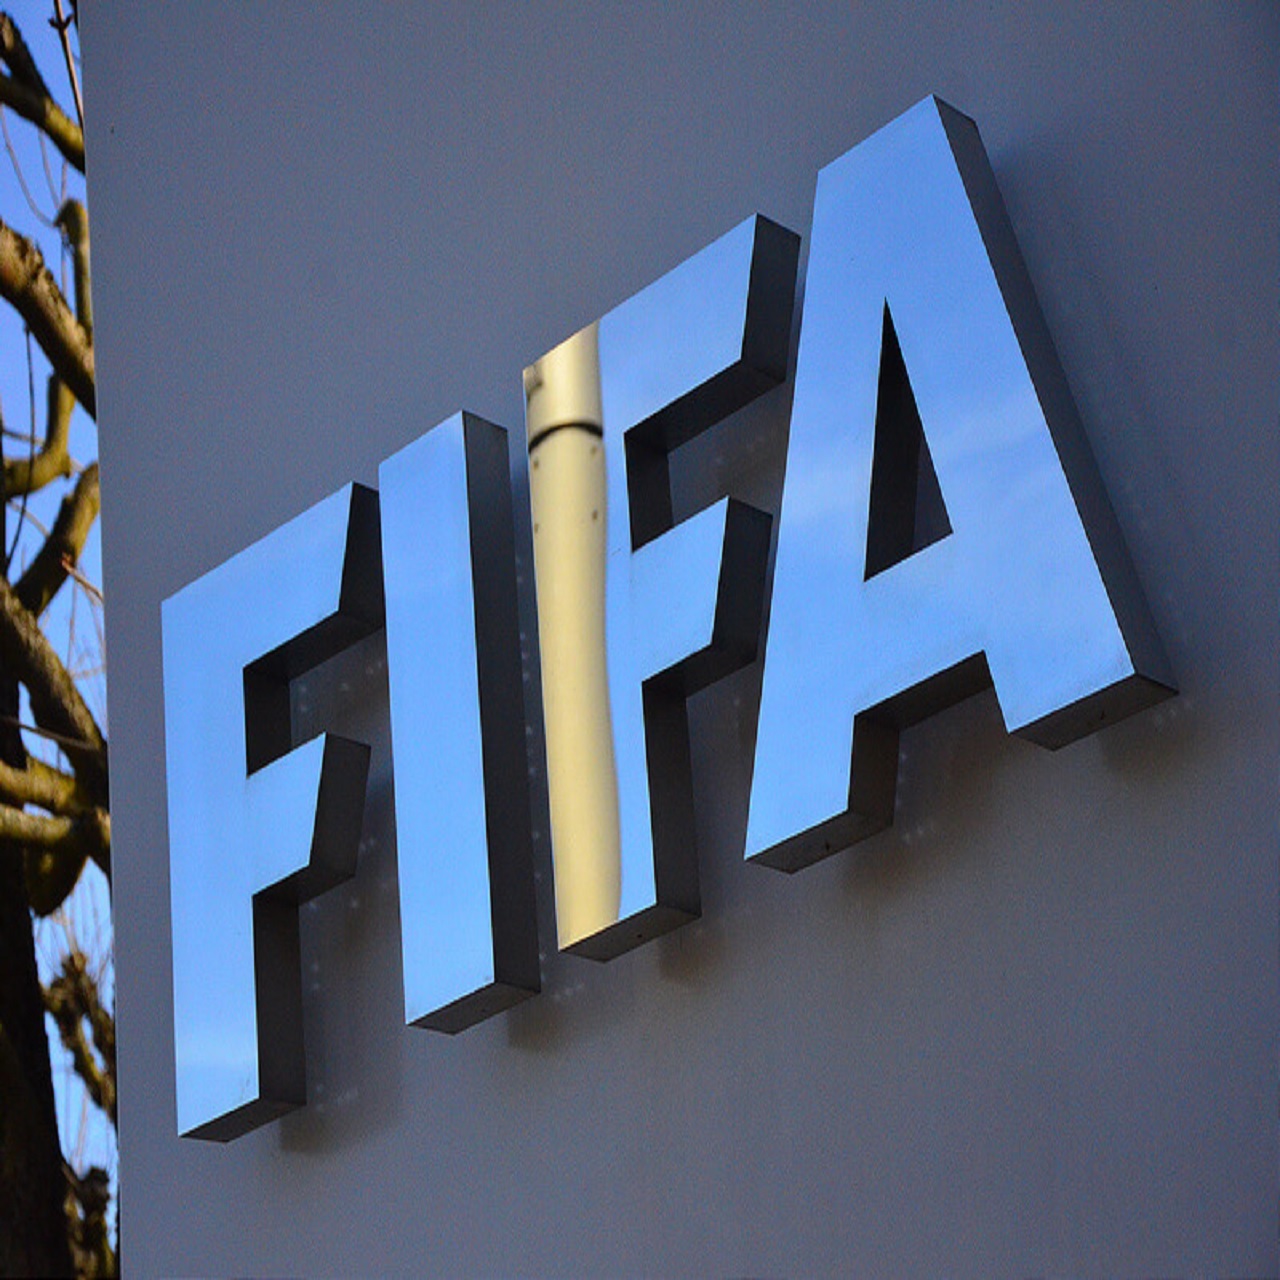 الفيفا يؤجل مباريات مارس ويونيو بتصفيات آسيا للمونديال رسميًا